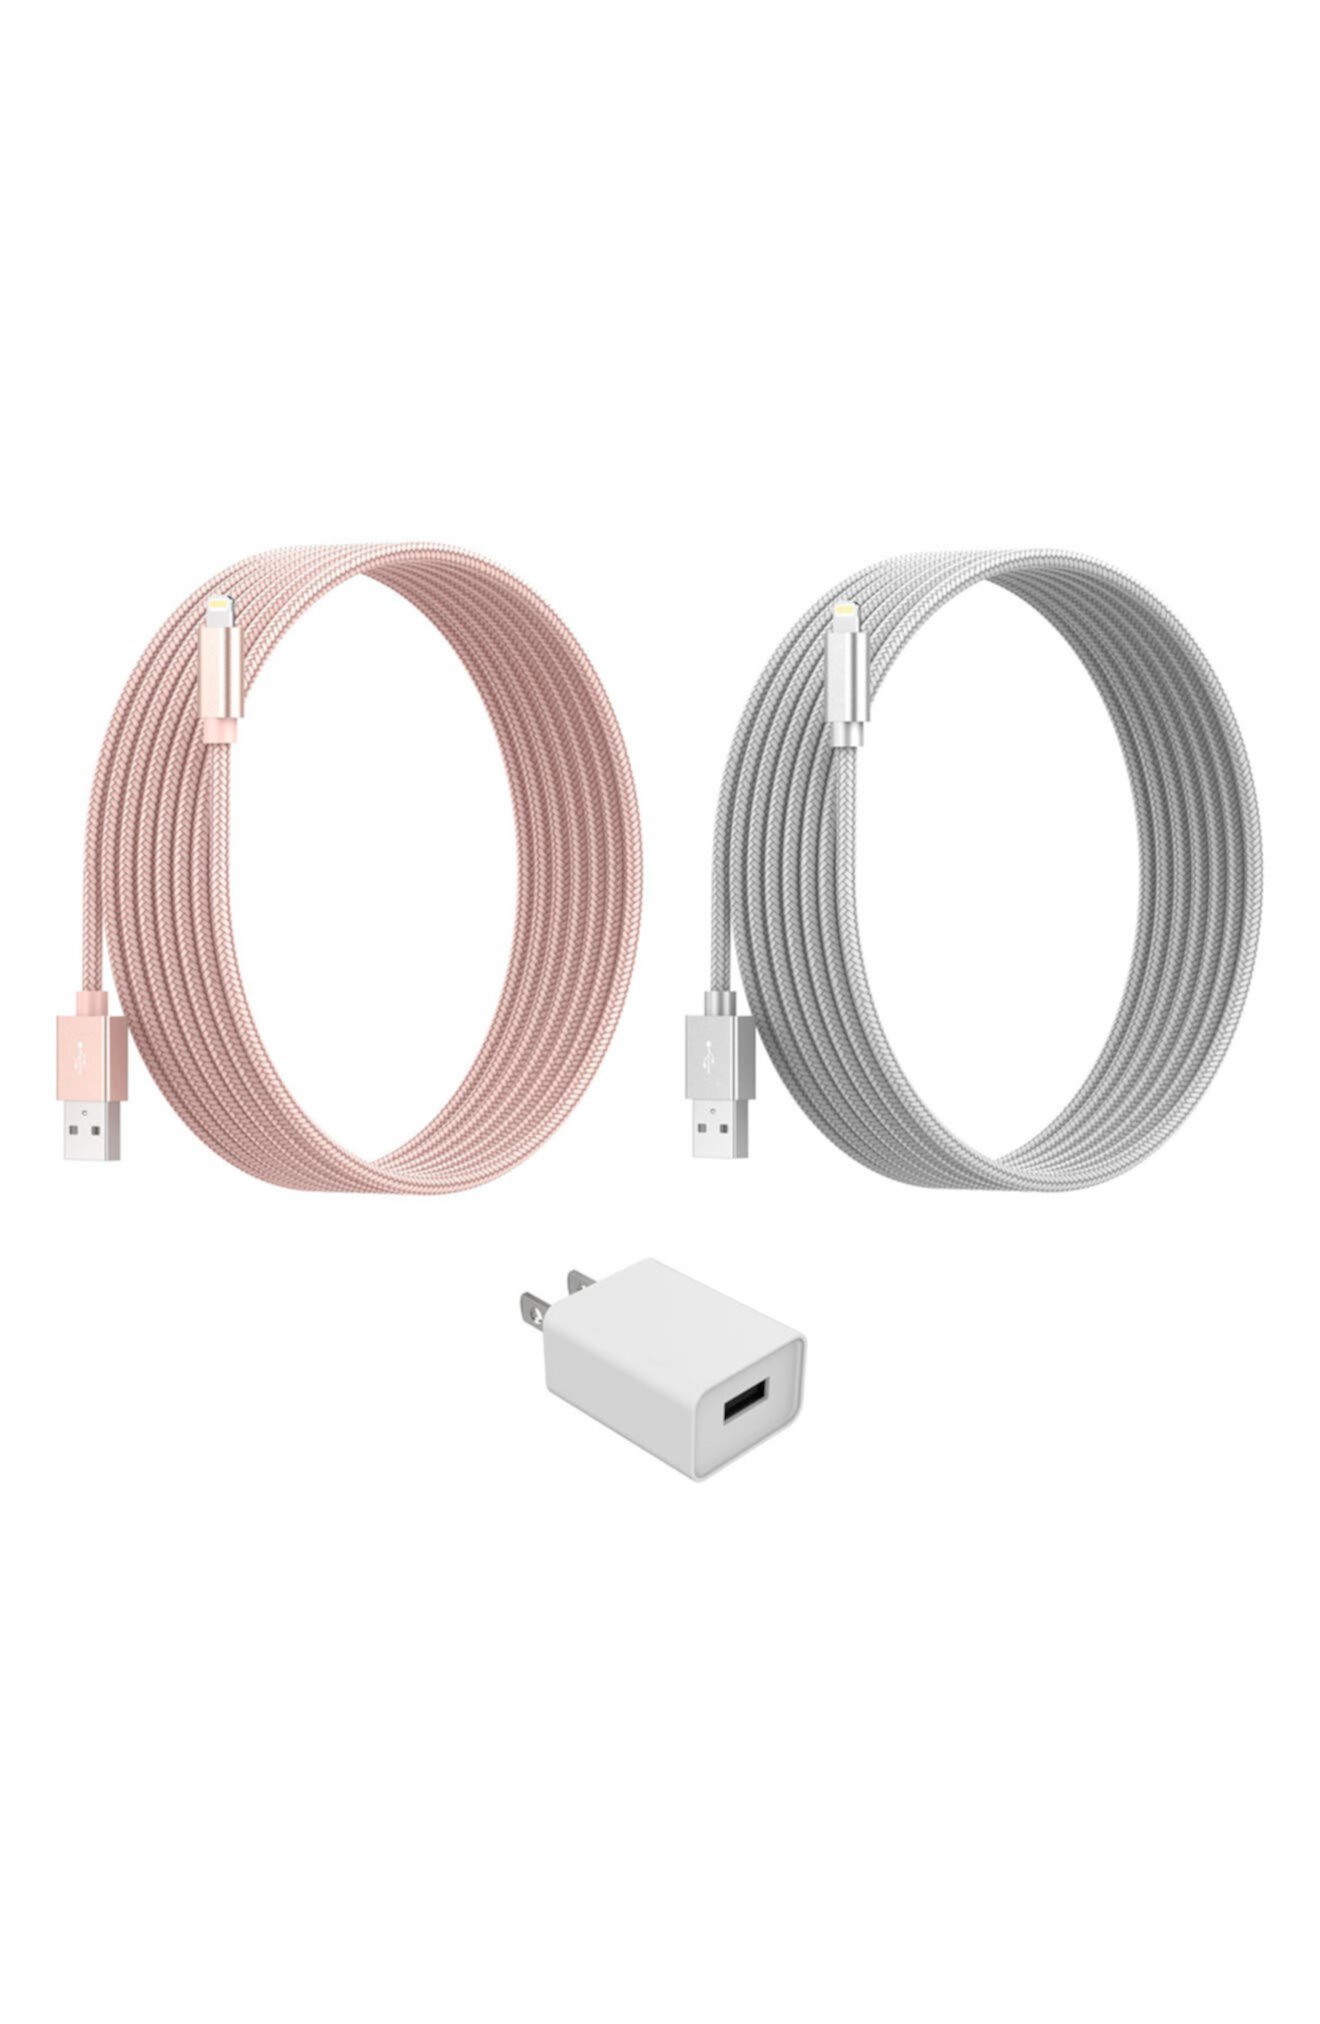 USB-кабель для зарядки и адаптер Lightning, набор из 3 предметов — серебристый/розовое золото THE POSH TECH